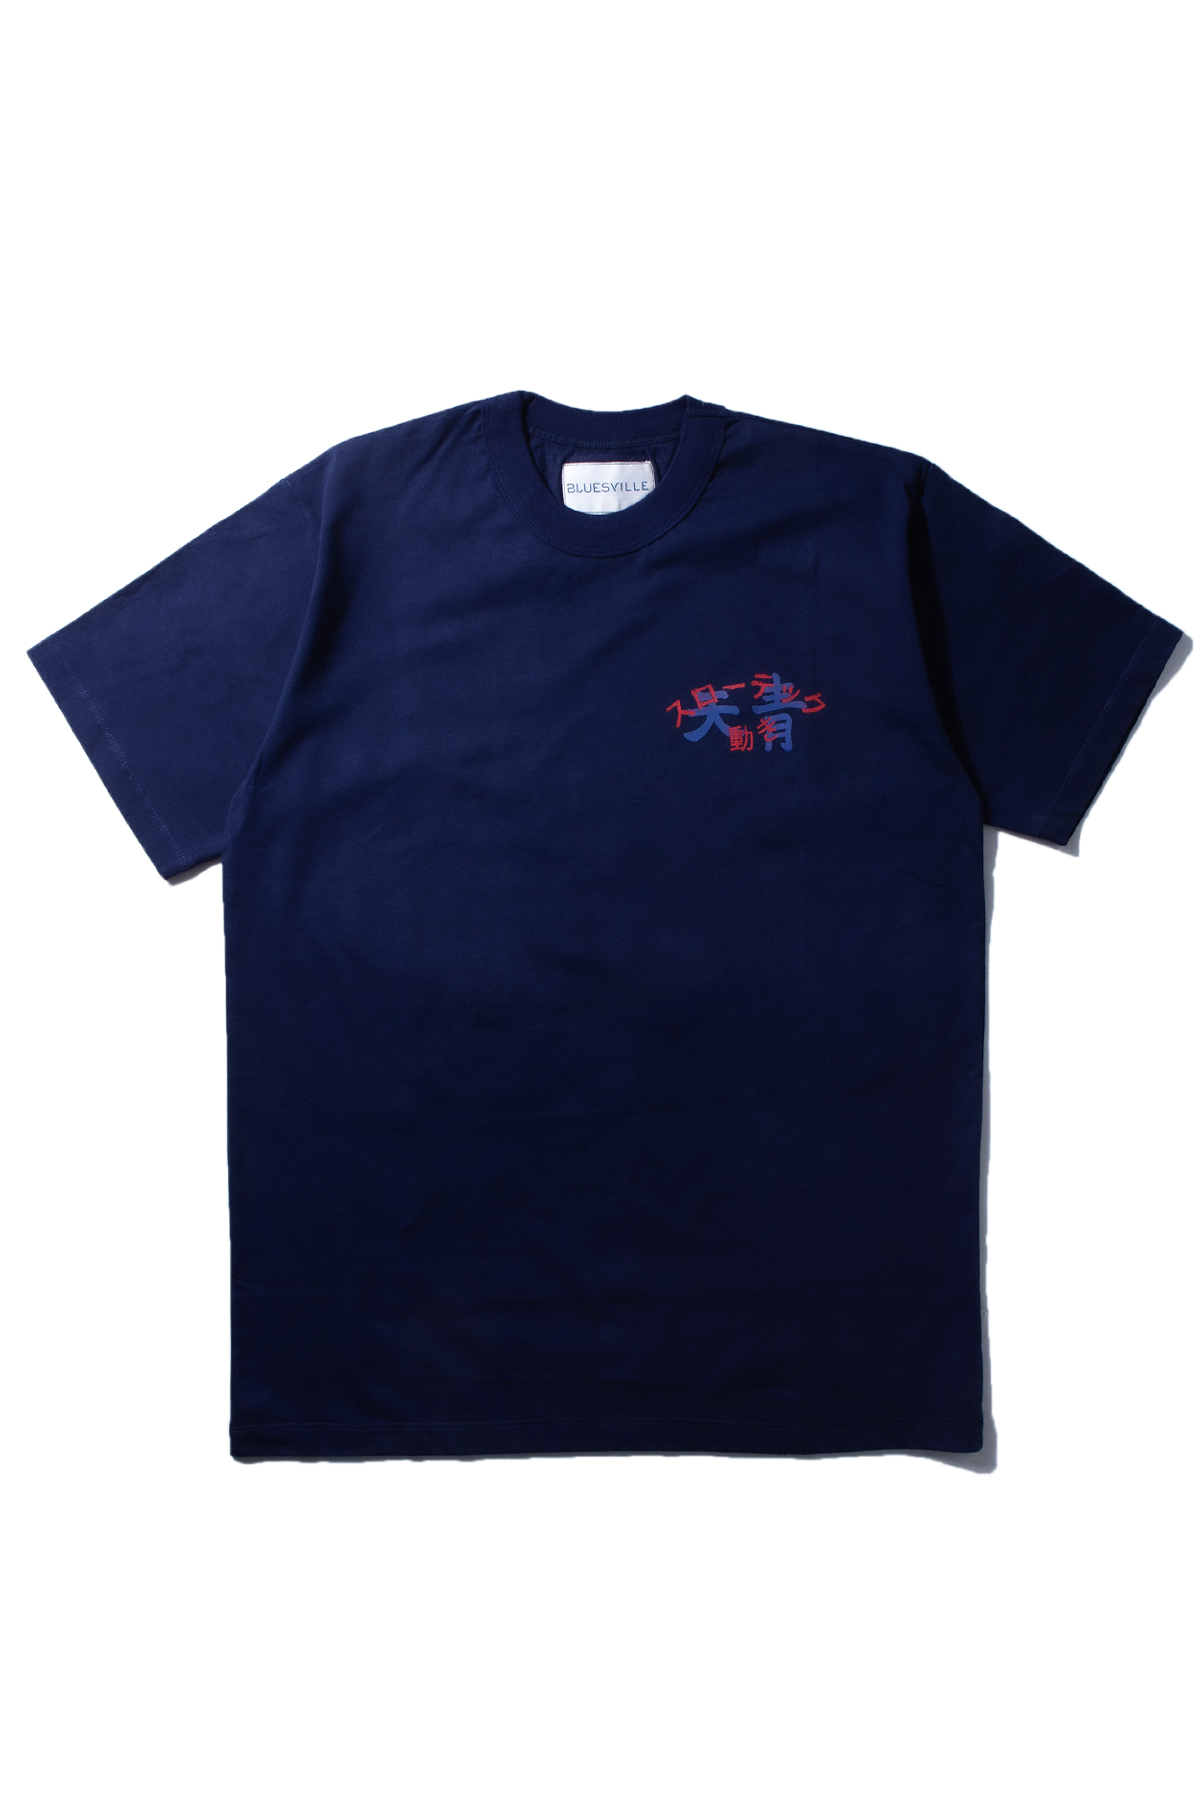 Bluesville x Tenjin Navy T-shirt – Bluesville